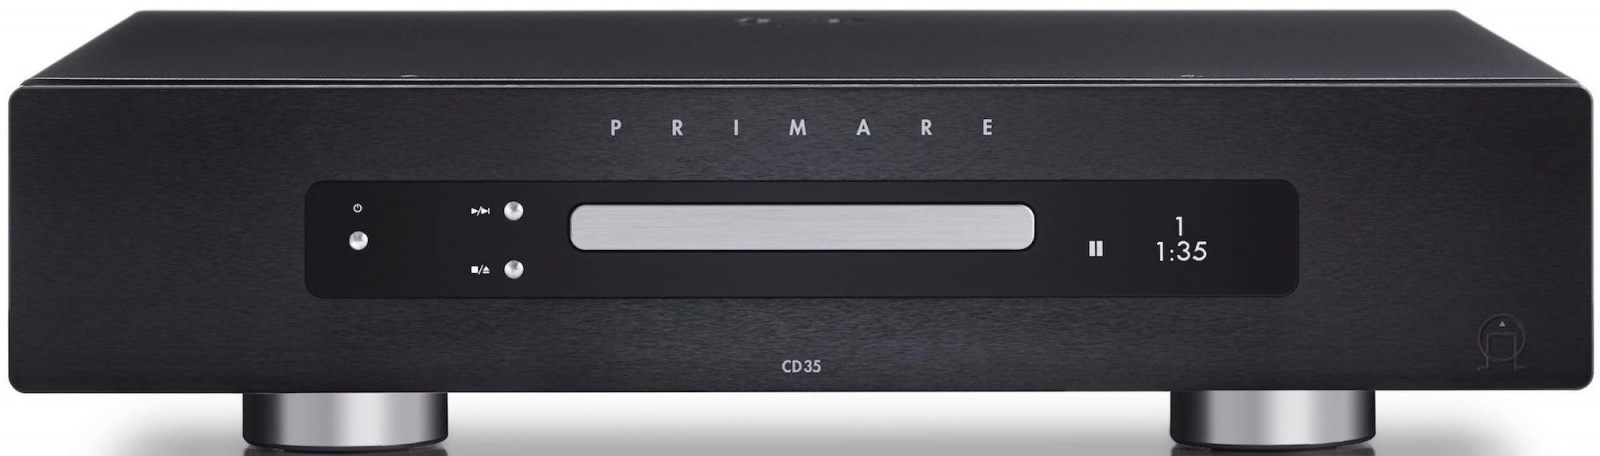 Фото № 1 Primare CD35 - цены, наличие, отзывы в интернет-магазине